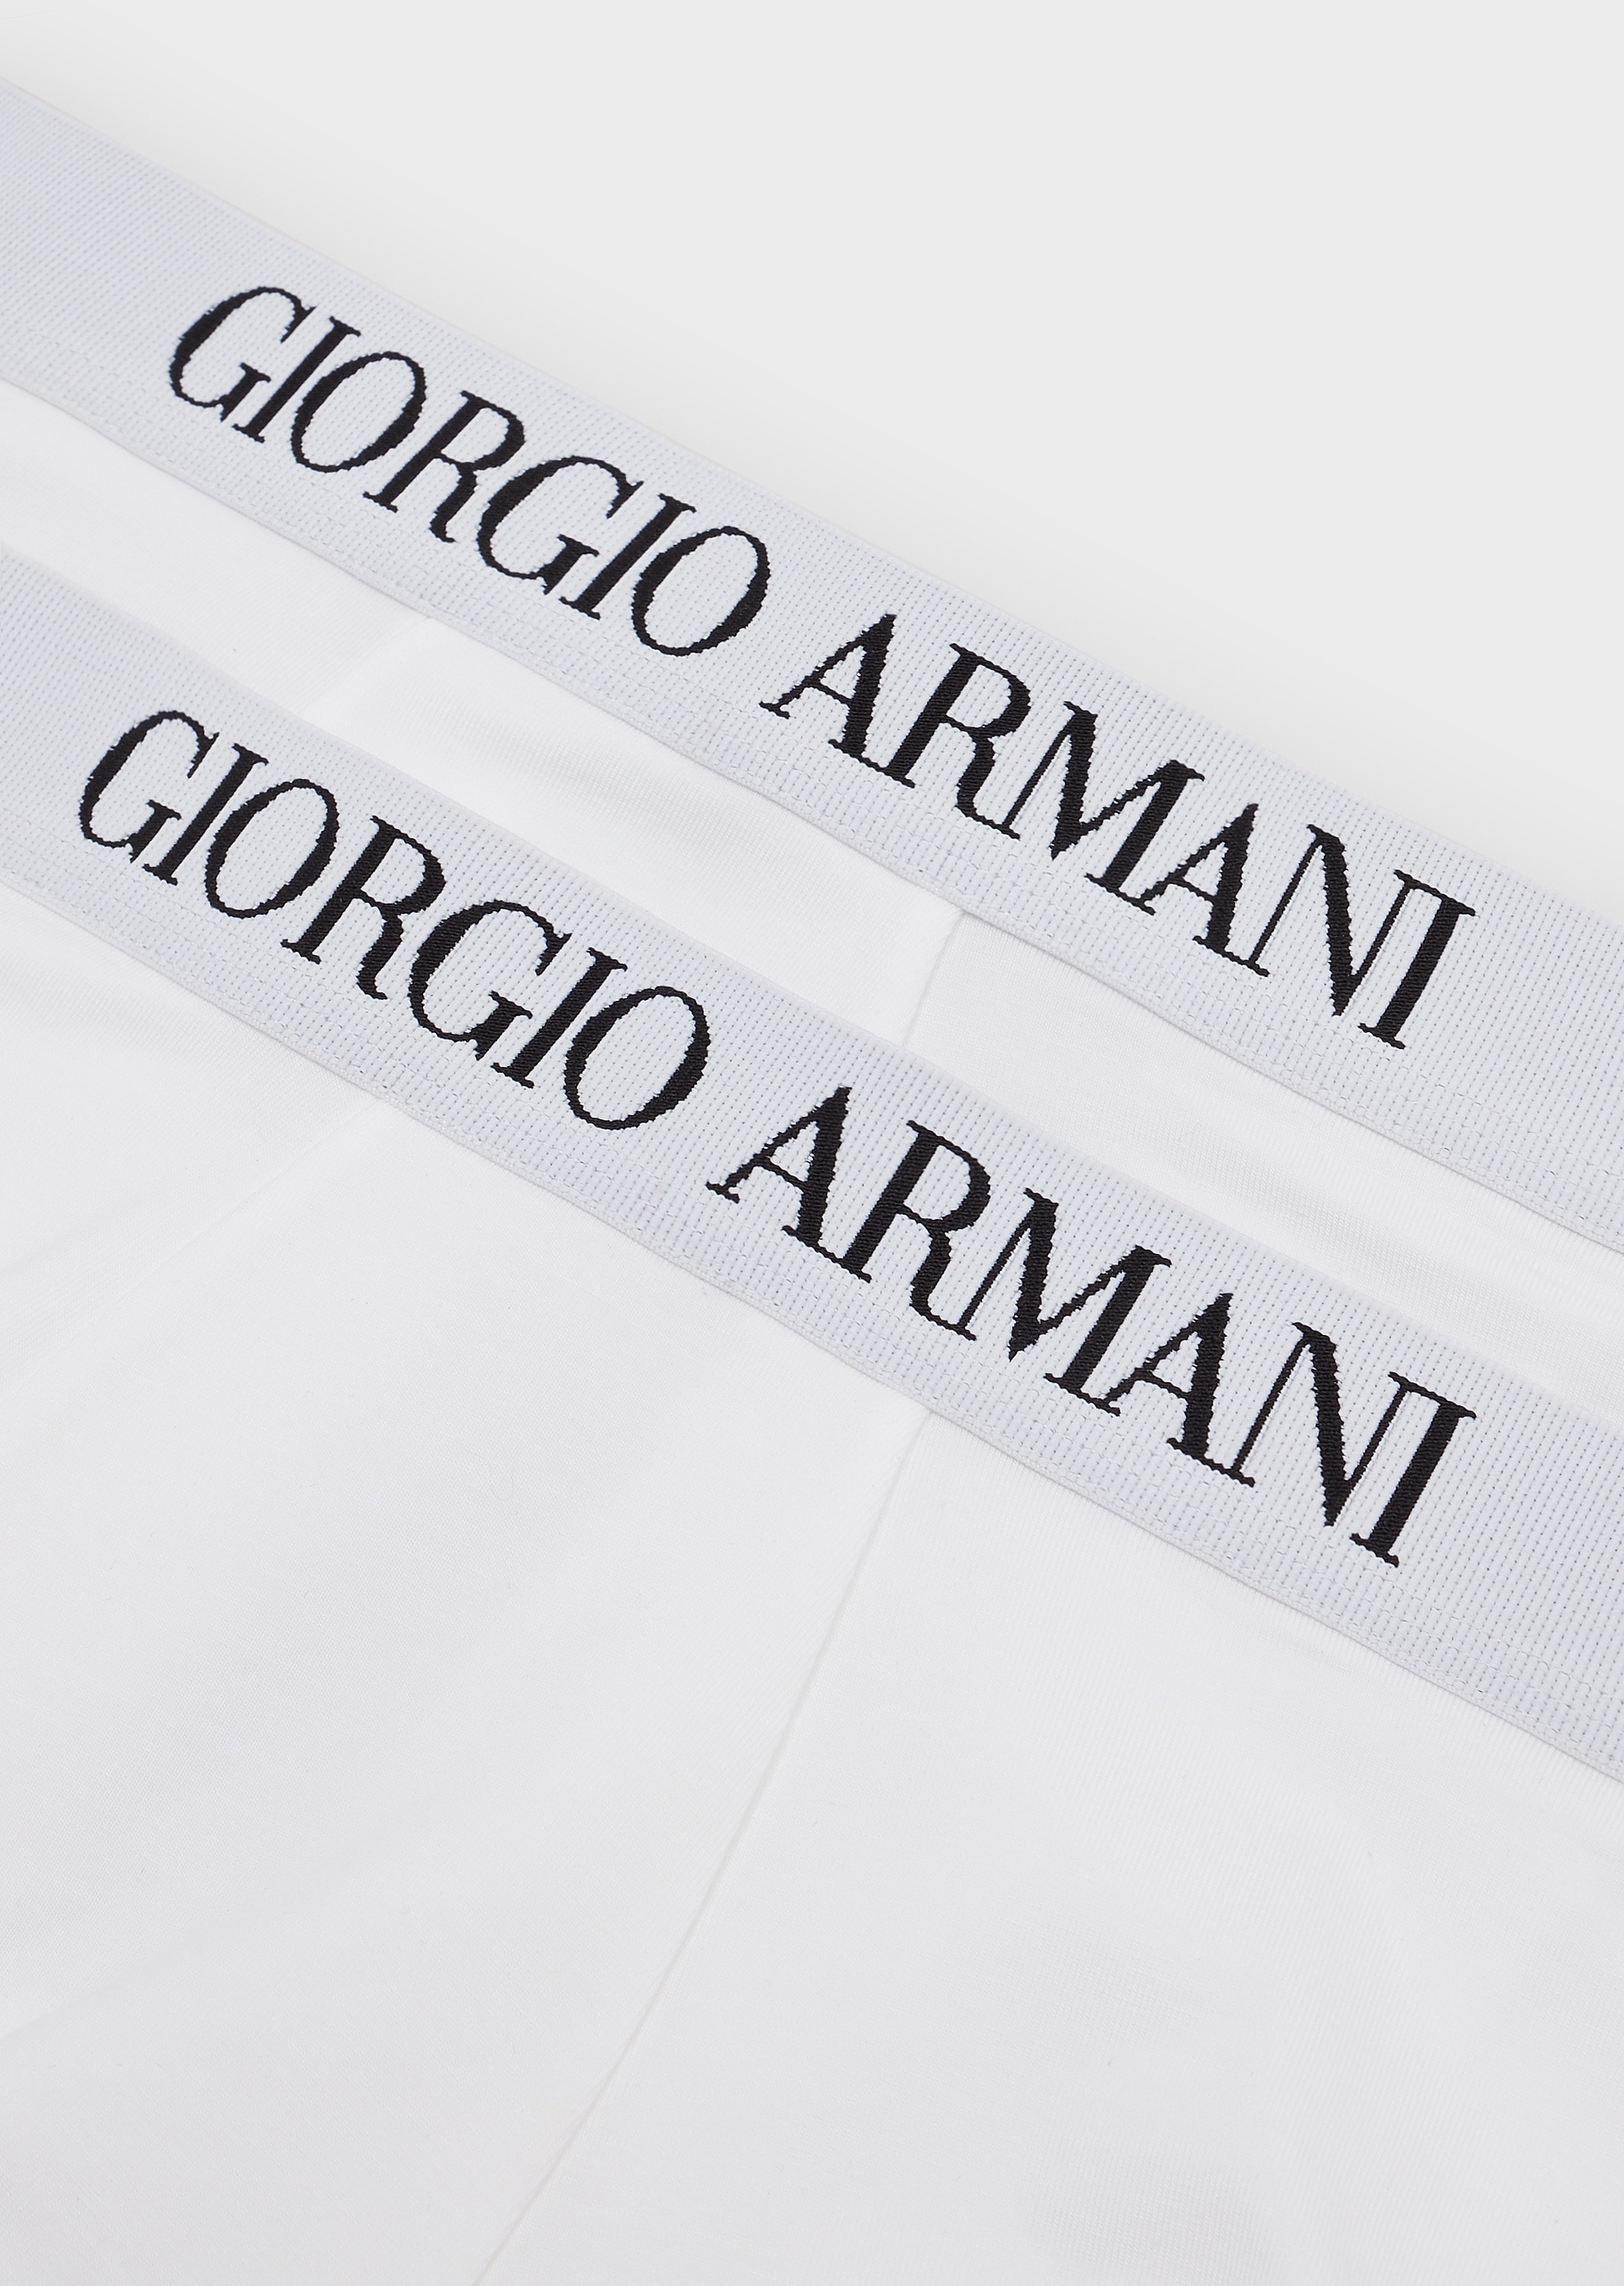 Giorgio Armani 弹力亲肤内裤套装